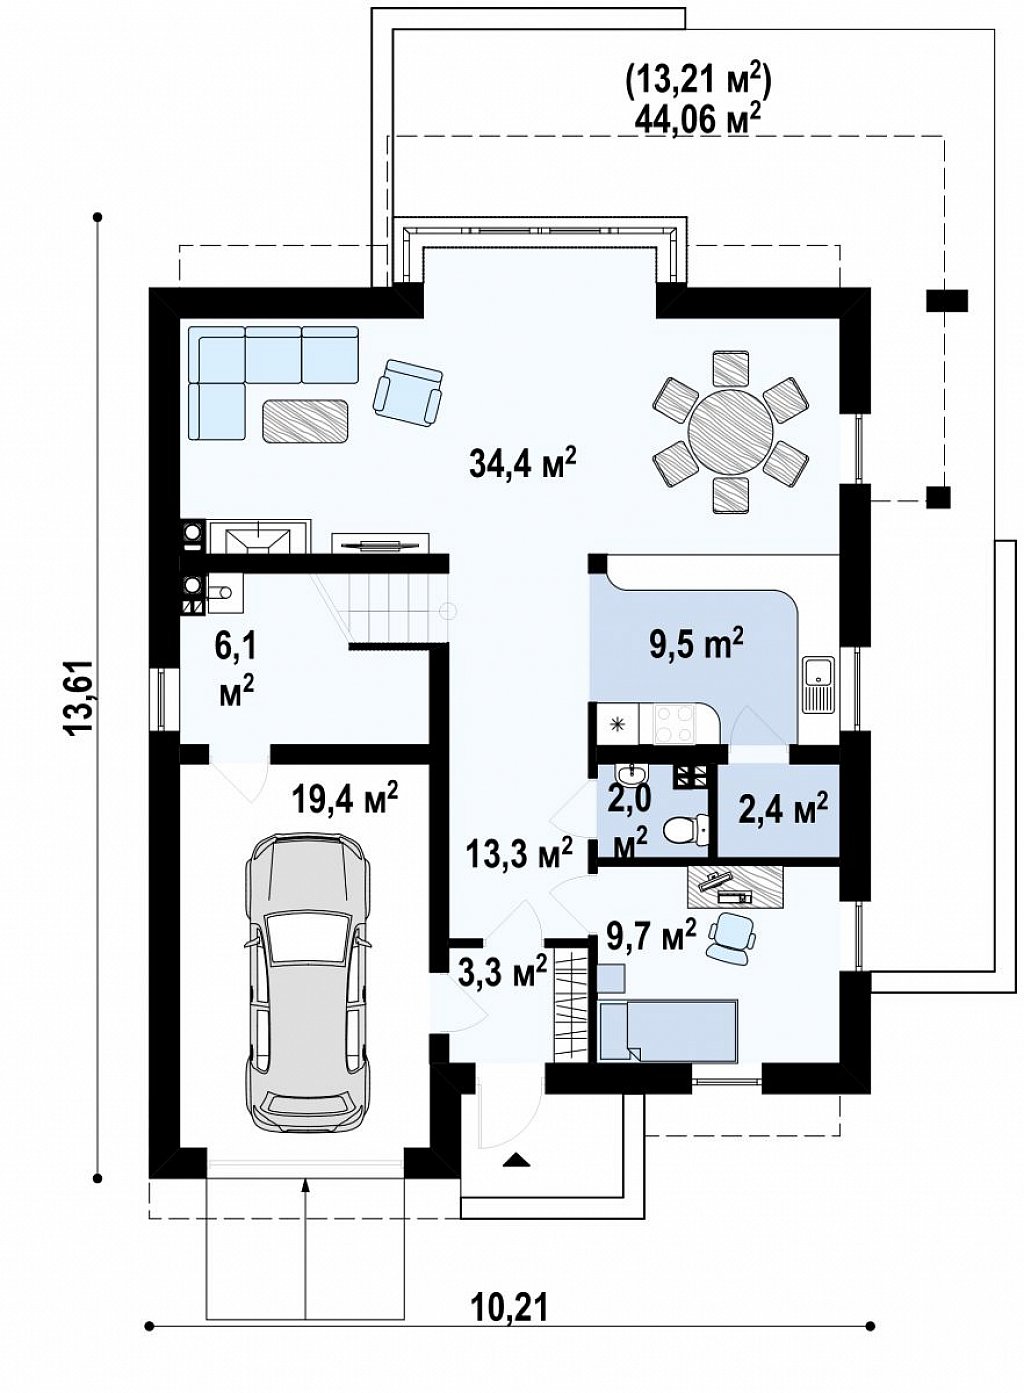 Современный дом с уютным и функциональным интерьером. Интересное сочетание двускатной крыши и кубических форм. план помещений 1